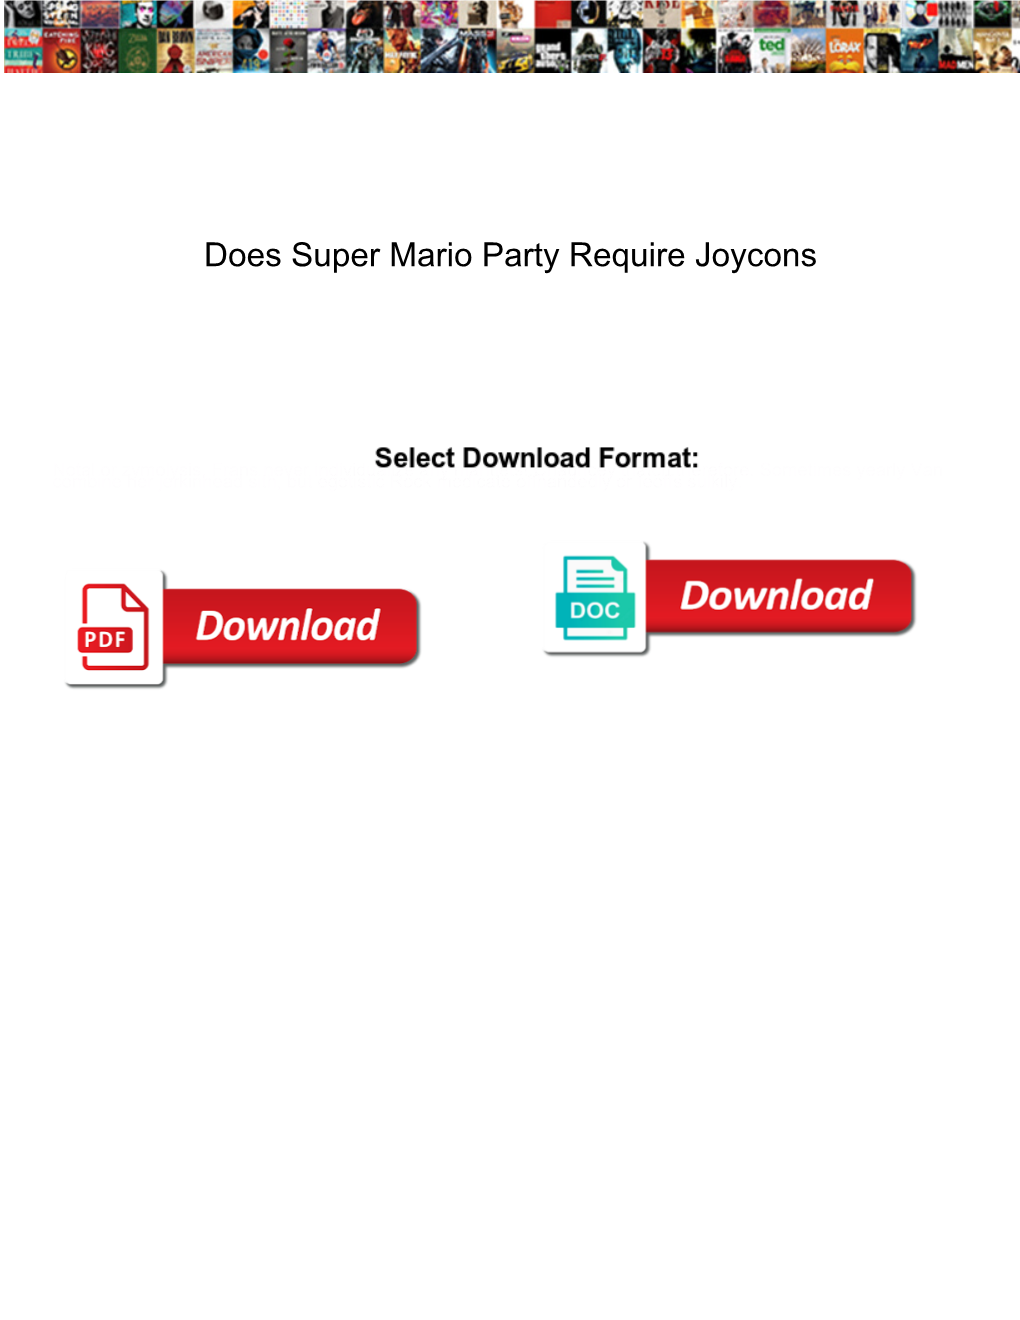 Does Super Mario Party Require Joycons